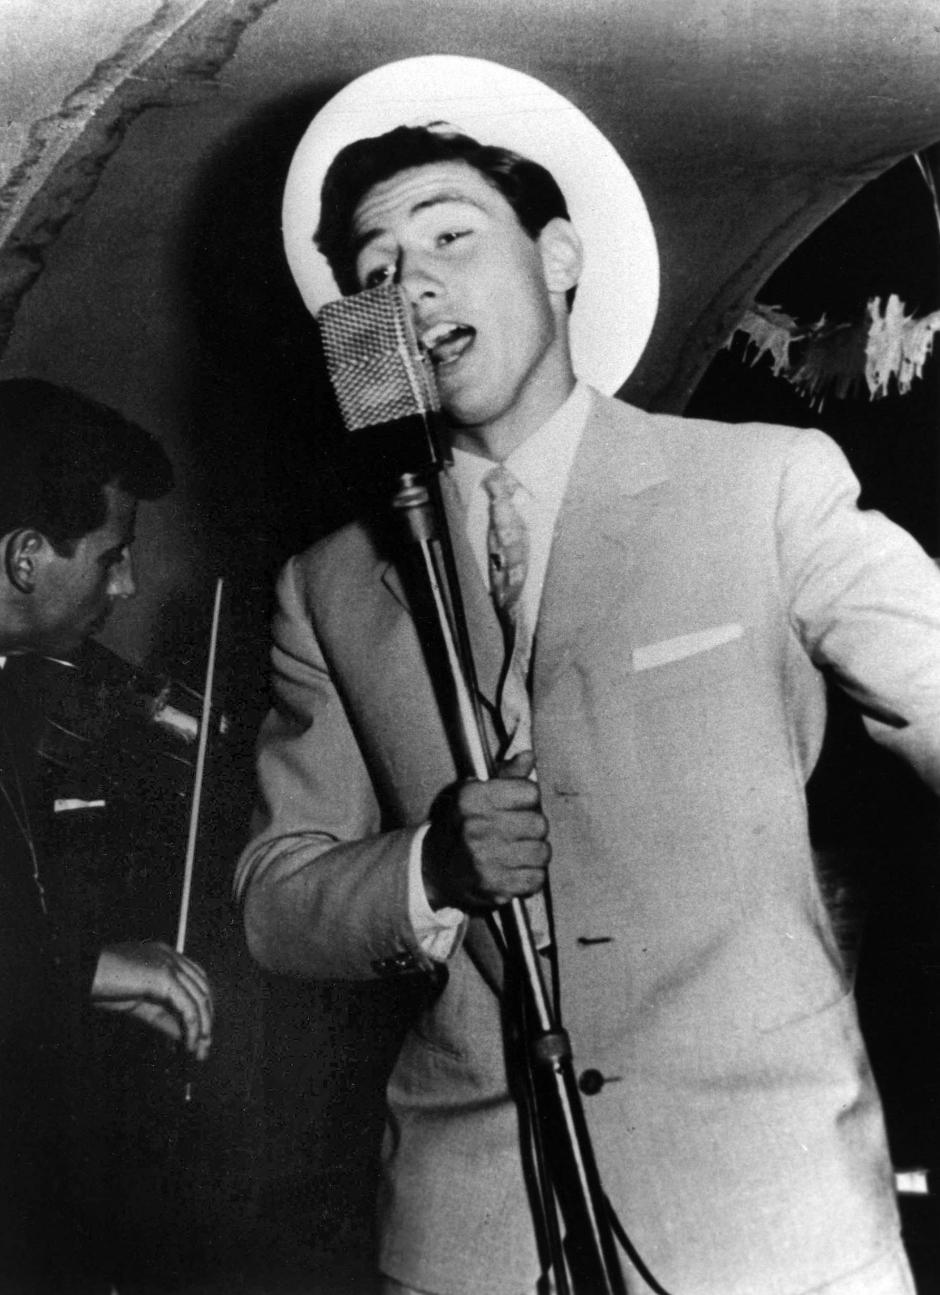 Silvio Berlusconi cantando en un evento en Milán en 1960